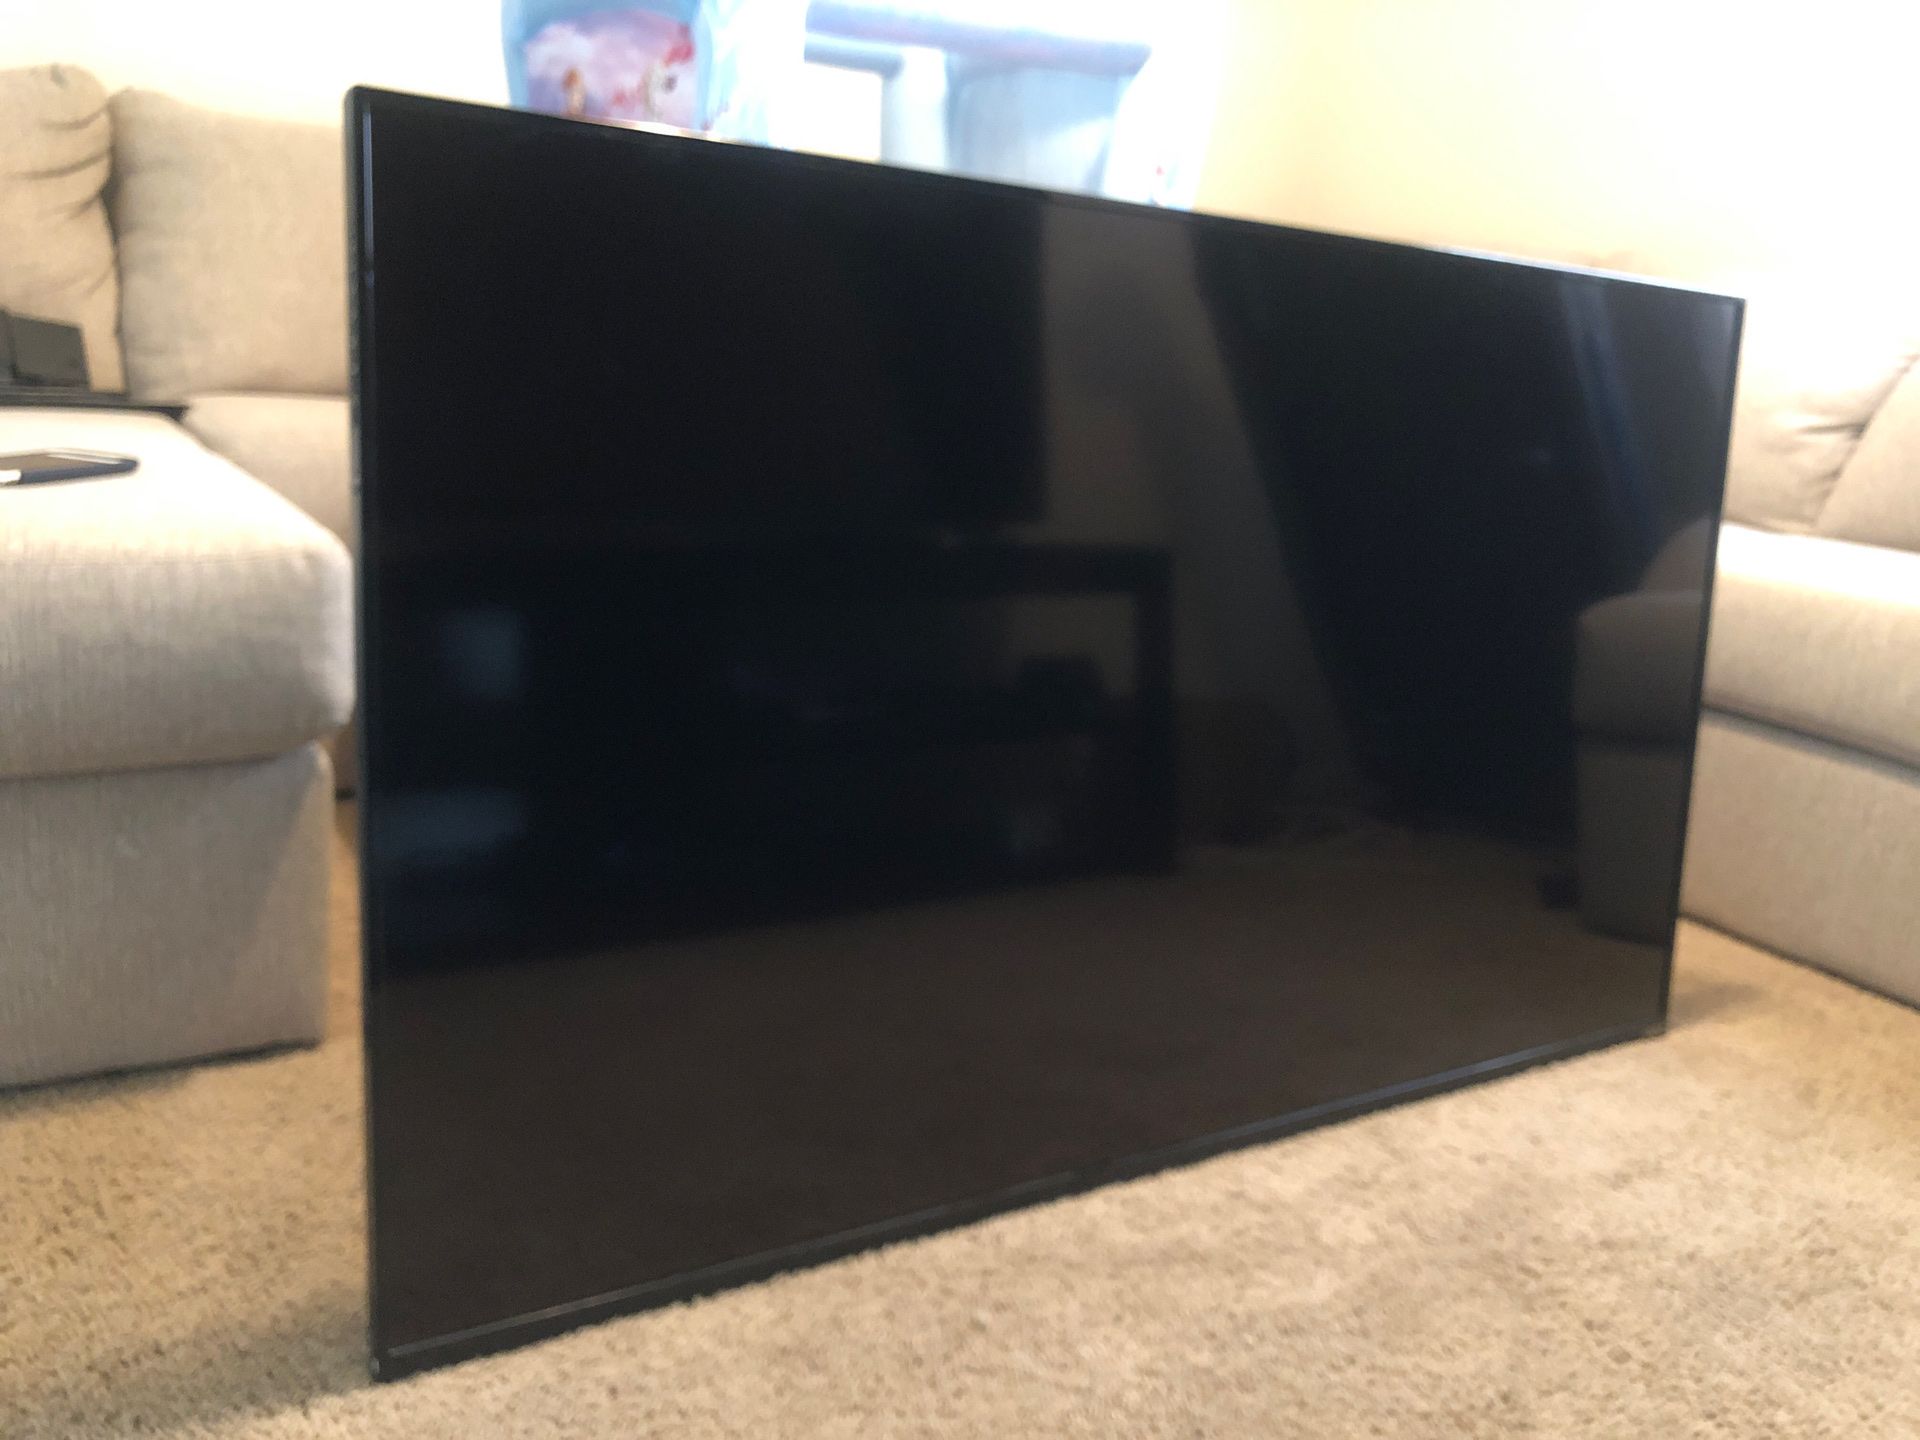 Vizio 60 inch tv